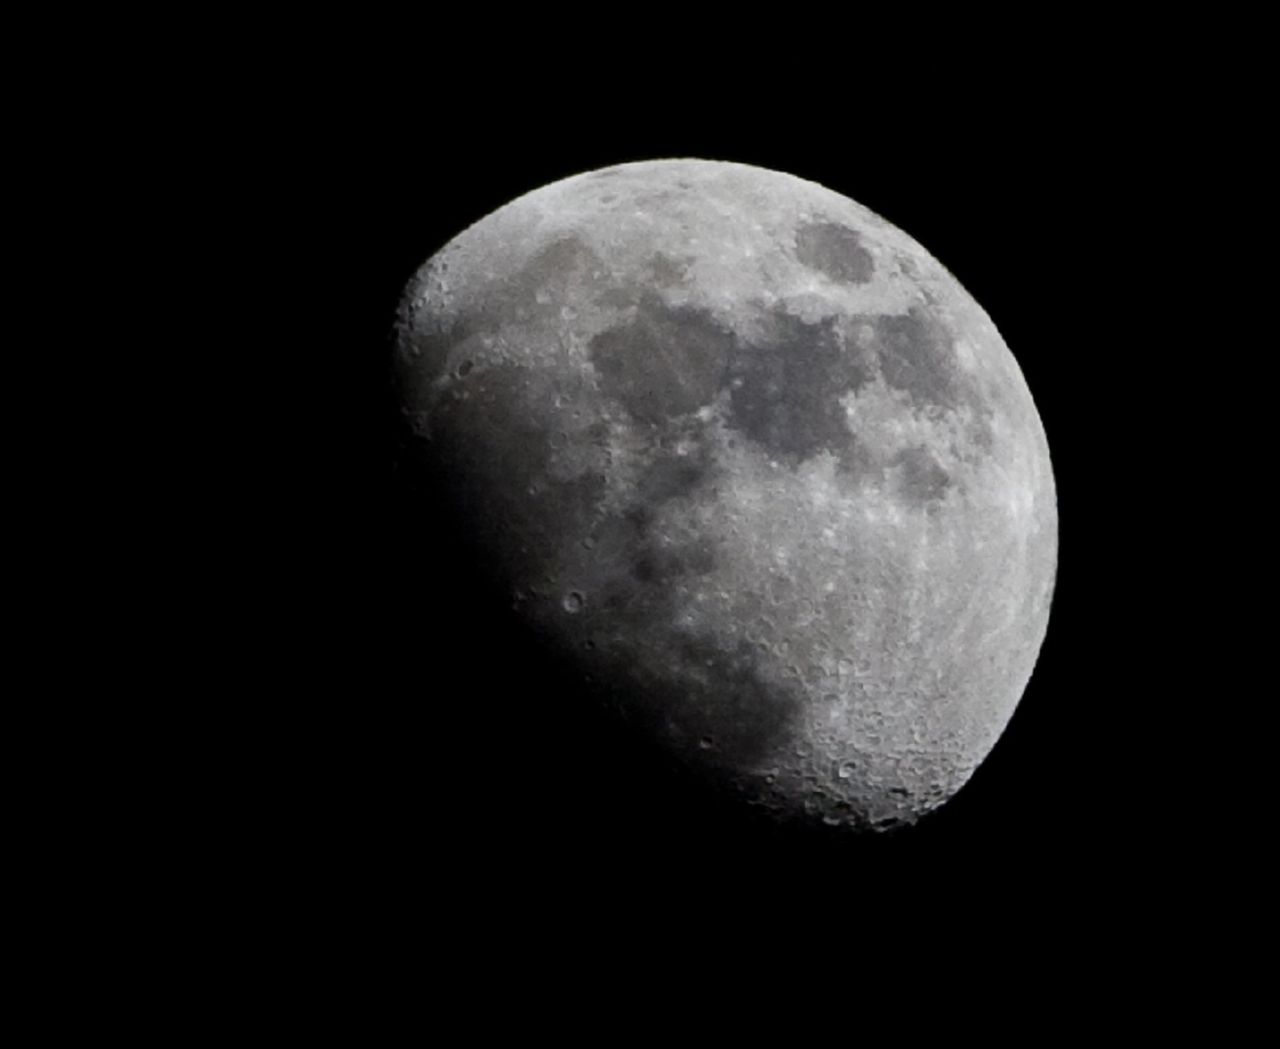 ESA: Księżyc jak ósmy kontynent. Pierwsza załoga wyruszy tam do końca 2024 roku - ESA planuje załogową misję na Księżyc